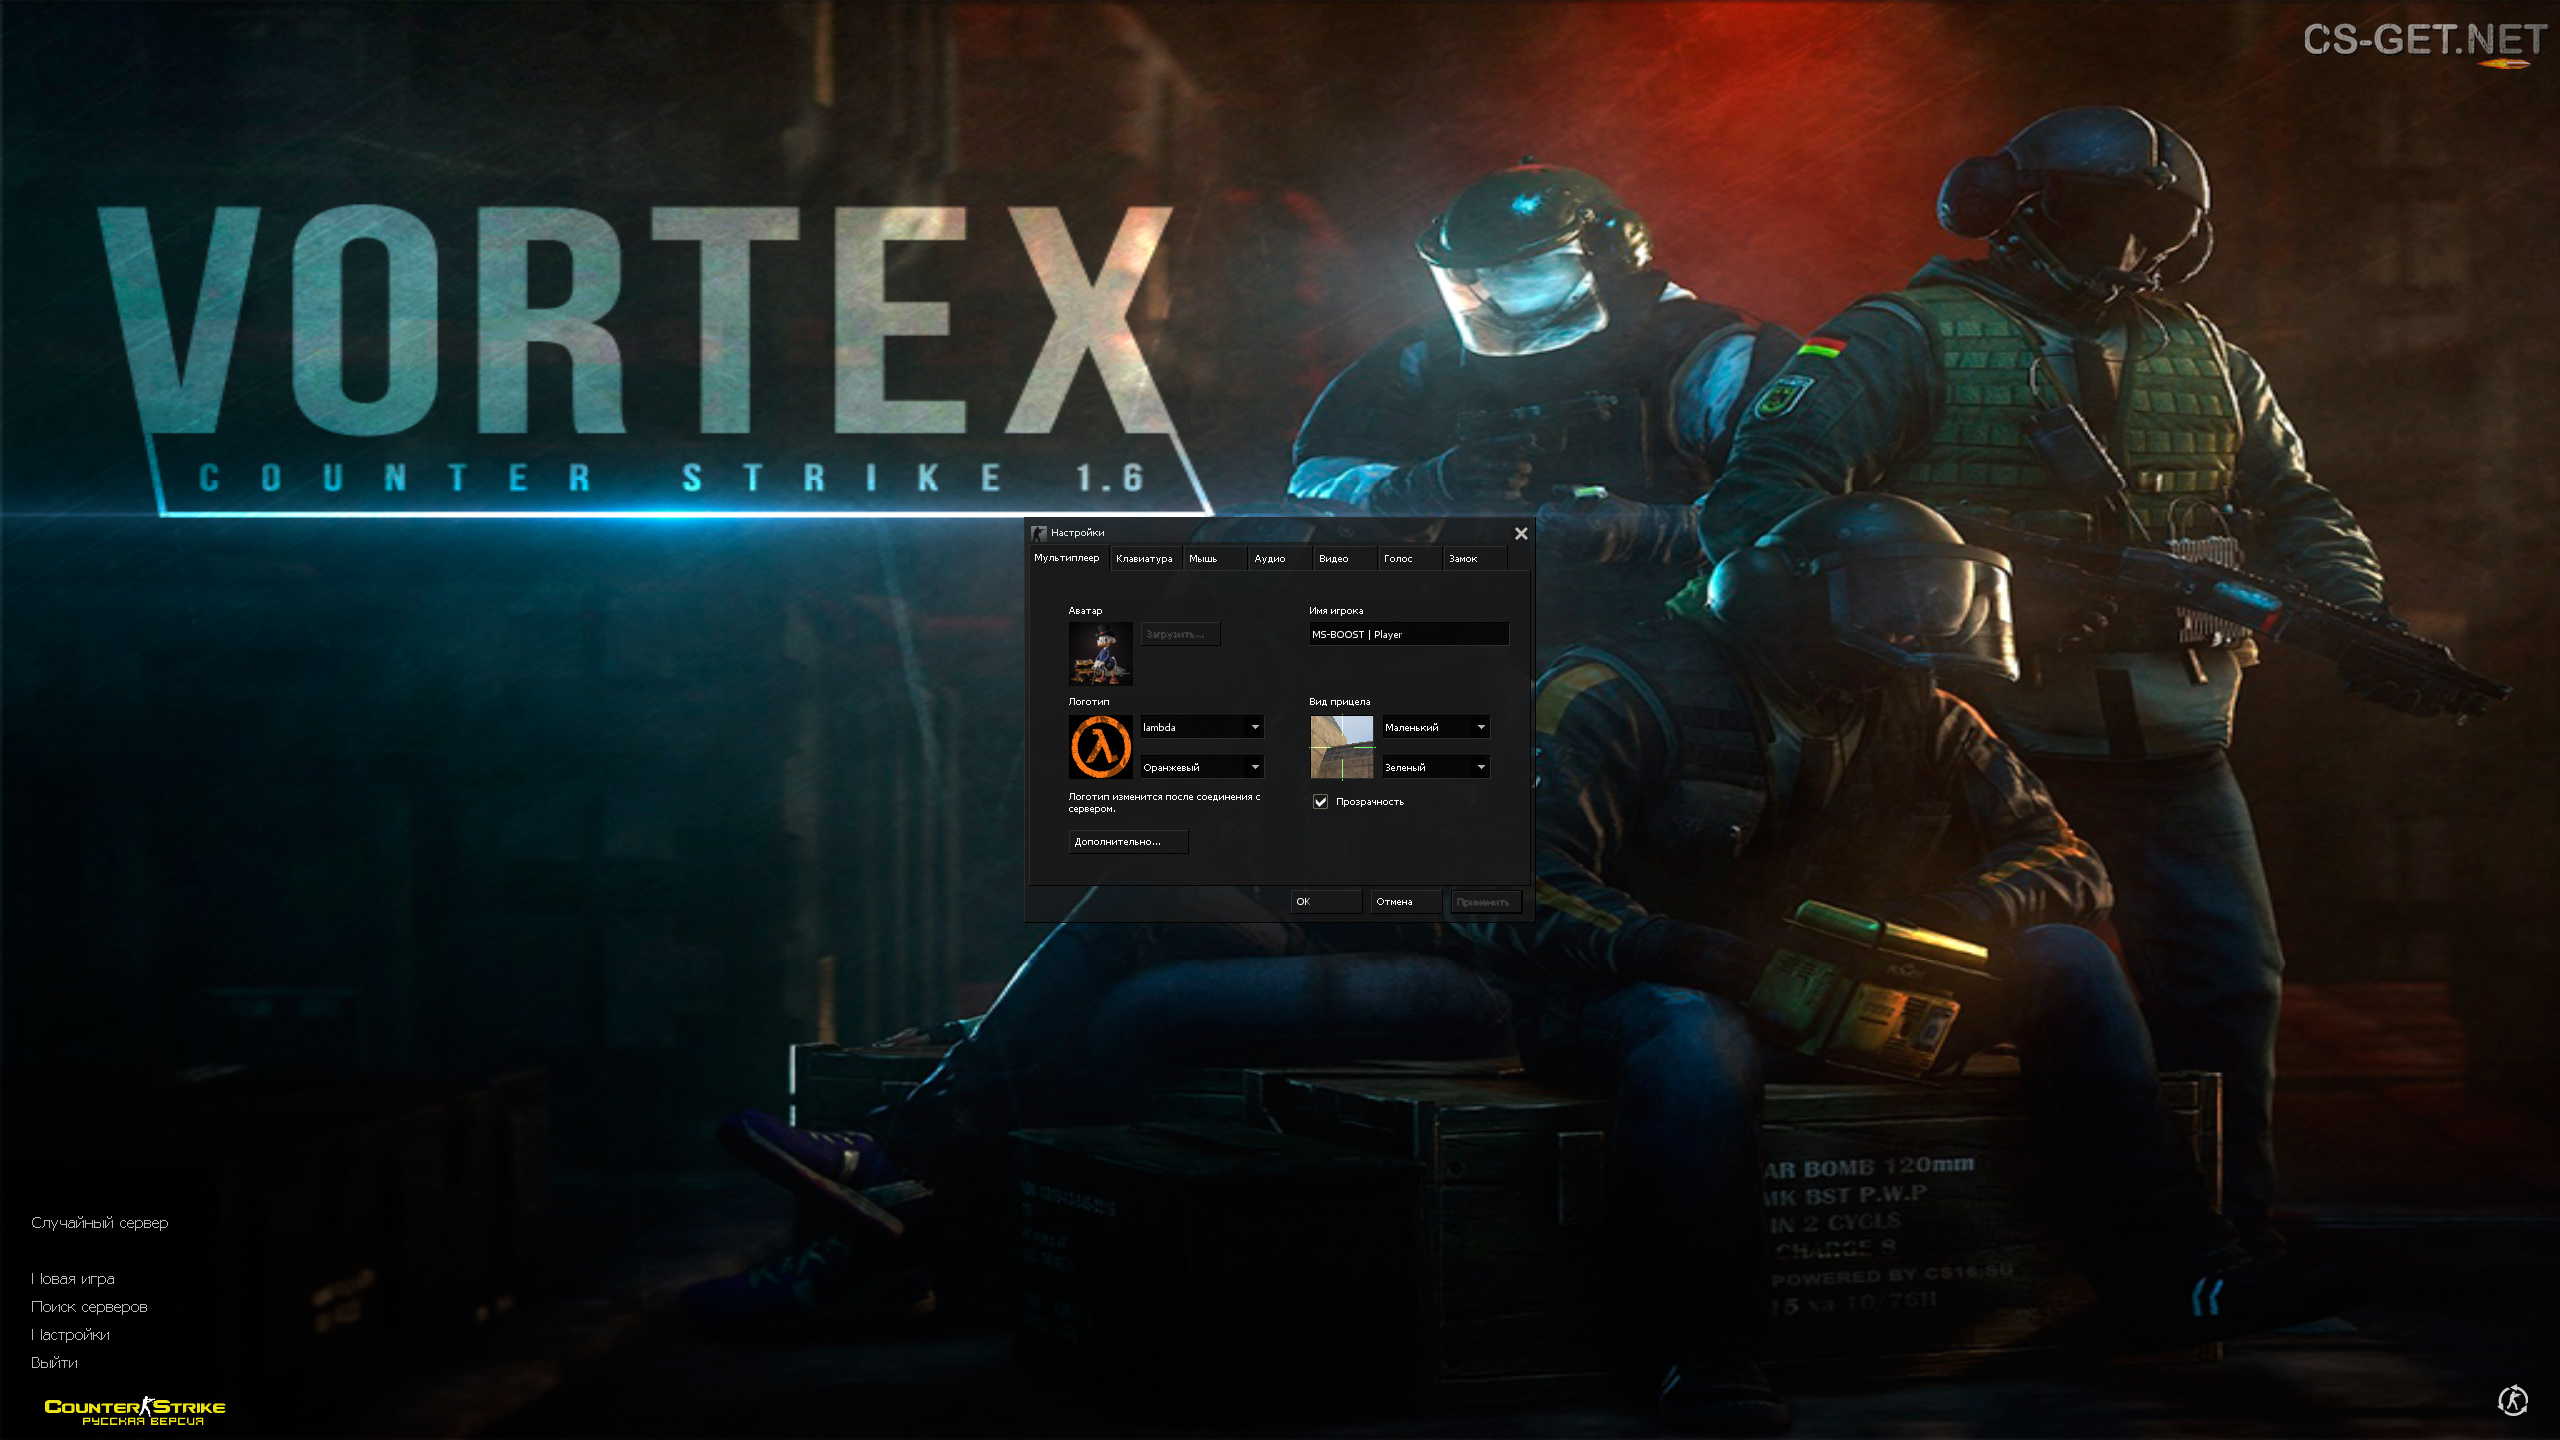 Counter strike 1.6 Vortex